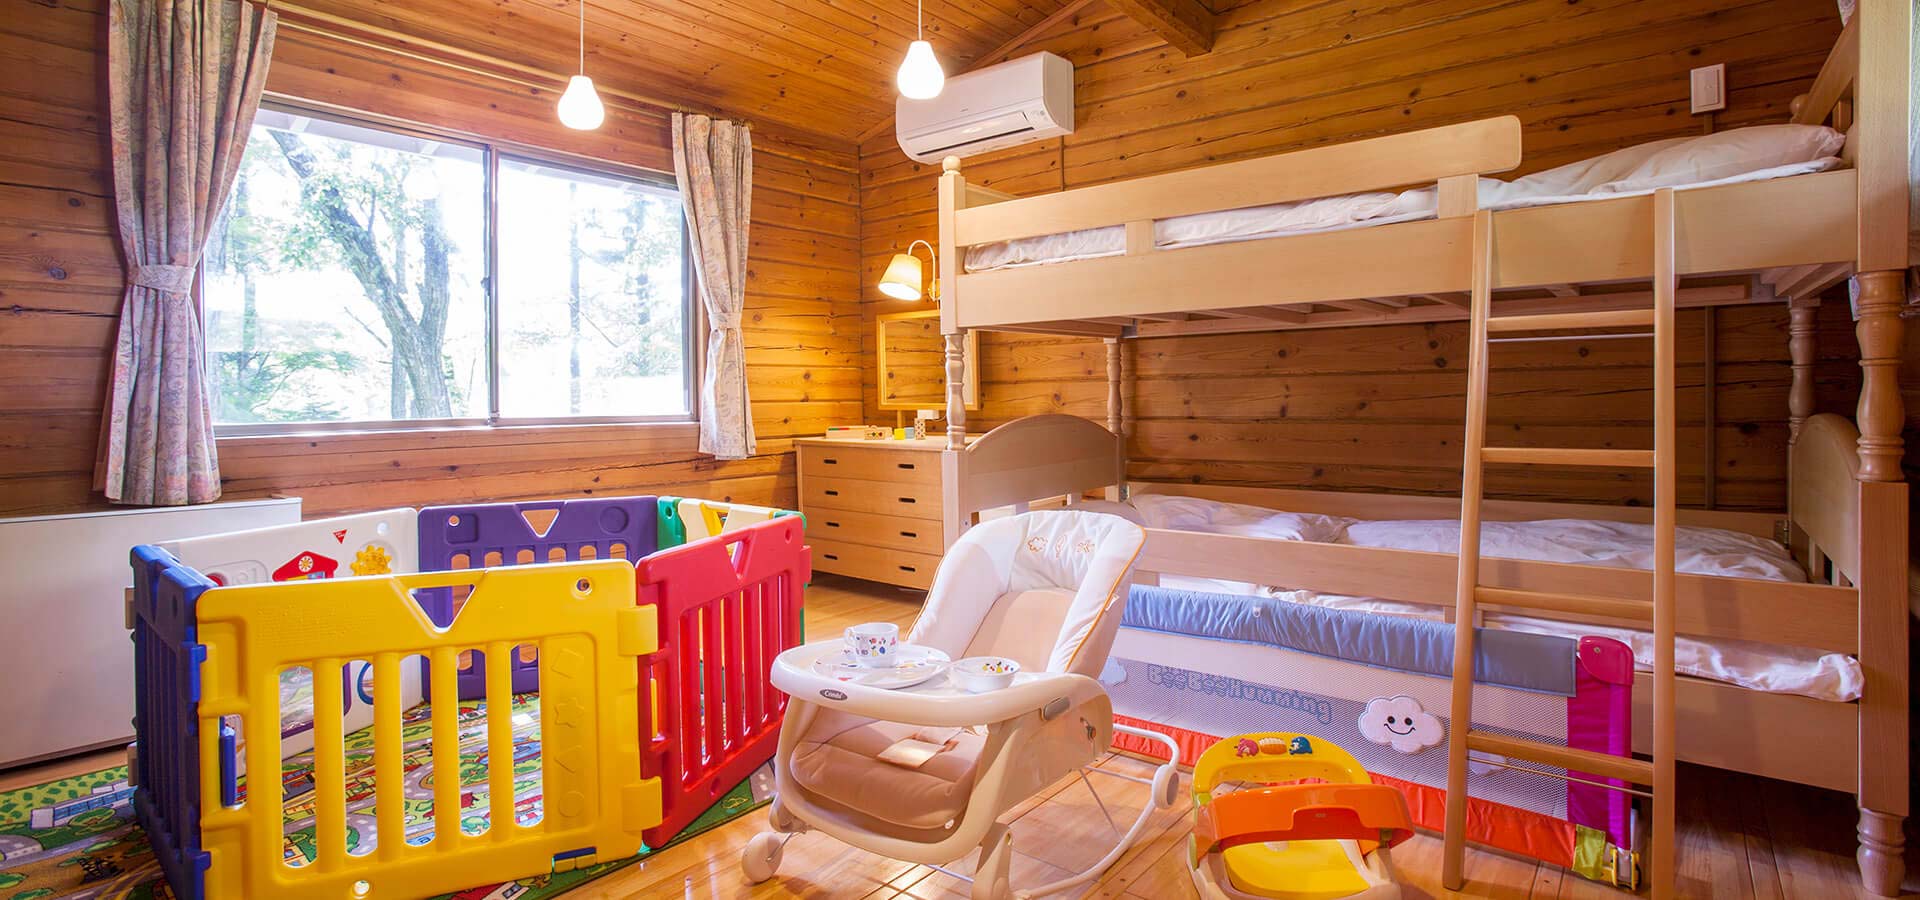 小木屋A 含兒童房間 共6棟